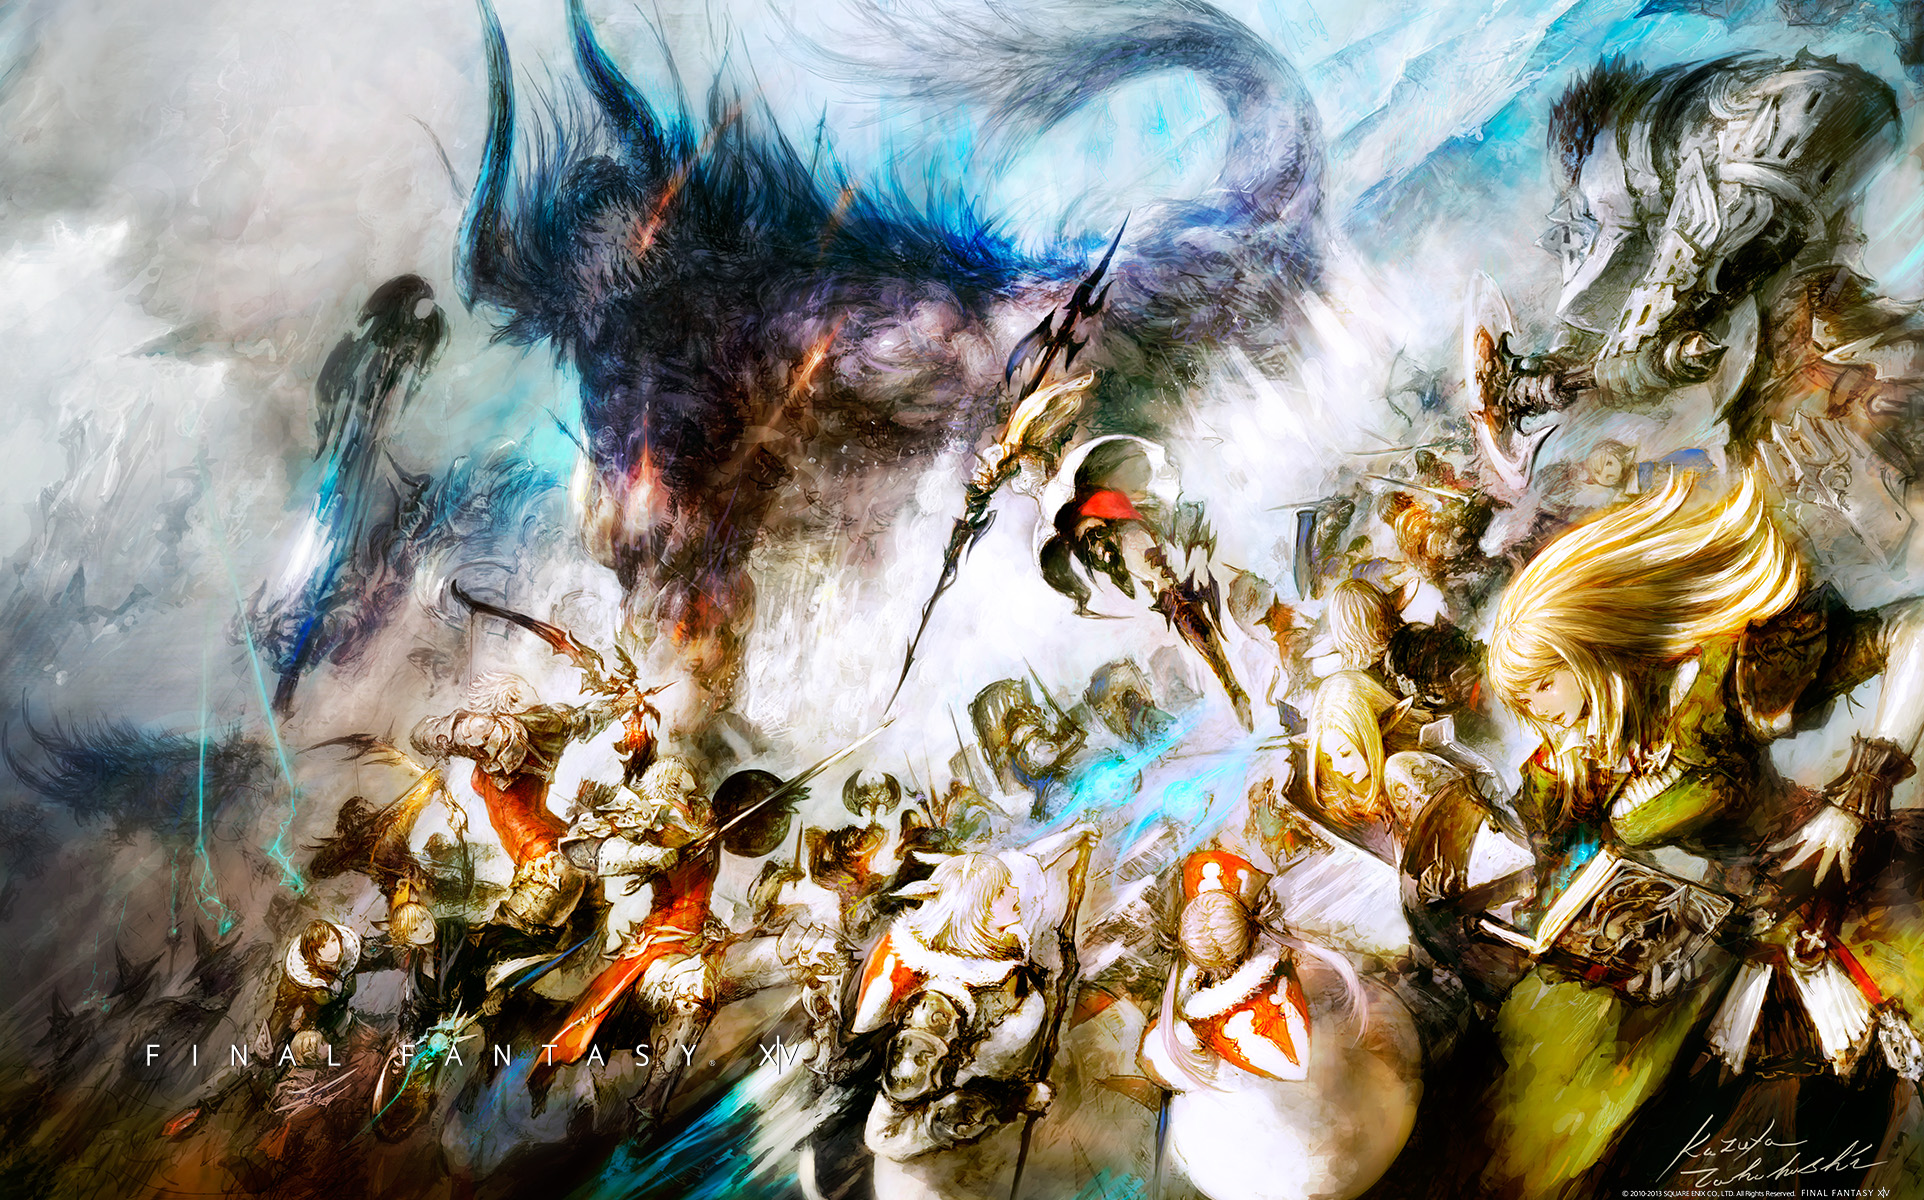  49 Final Fantasy  1  Wallpaper  on WallpaperSafari